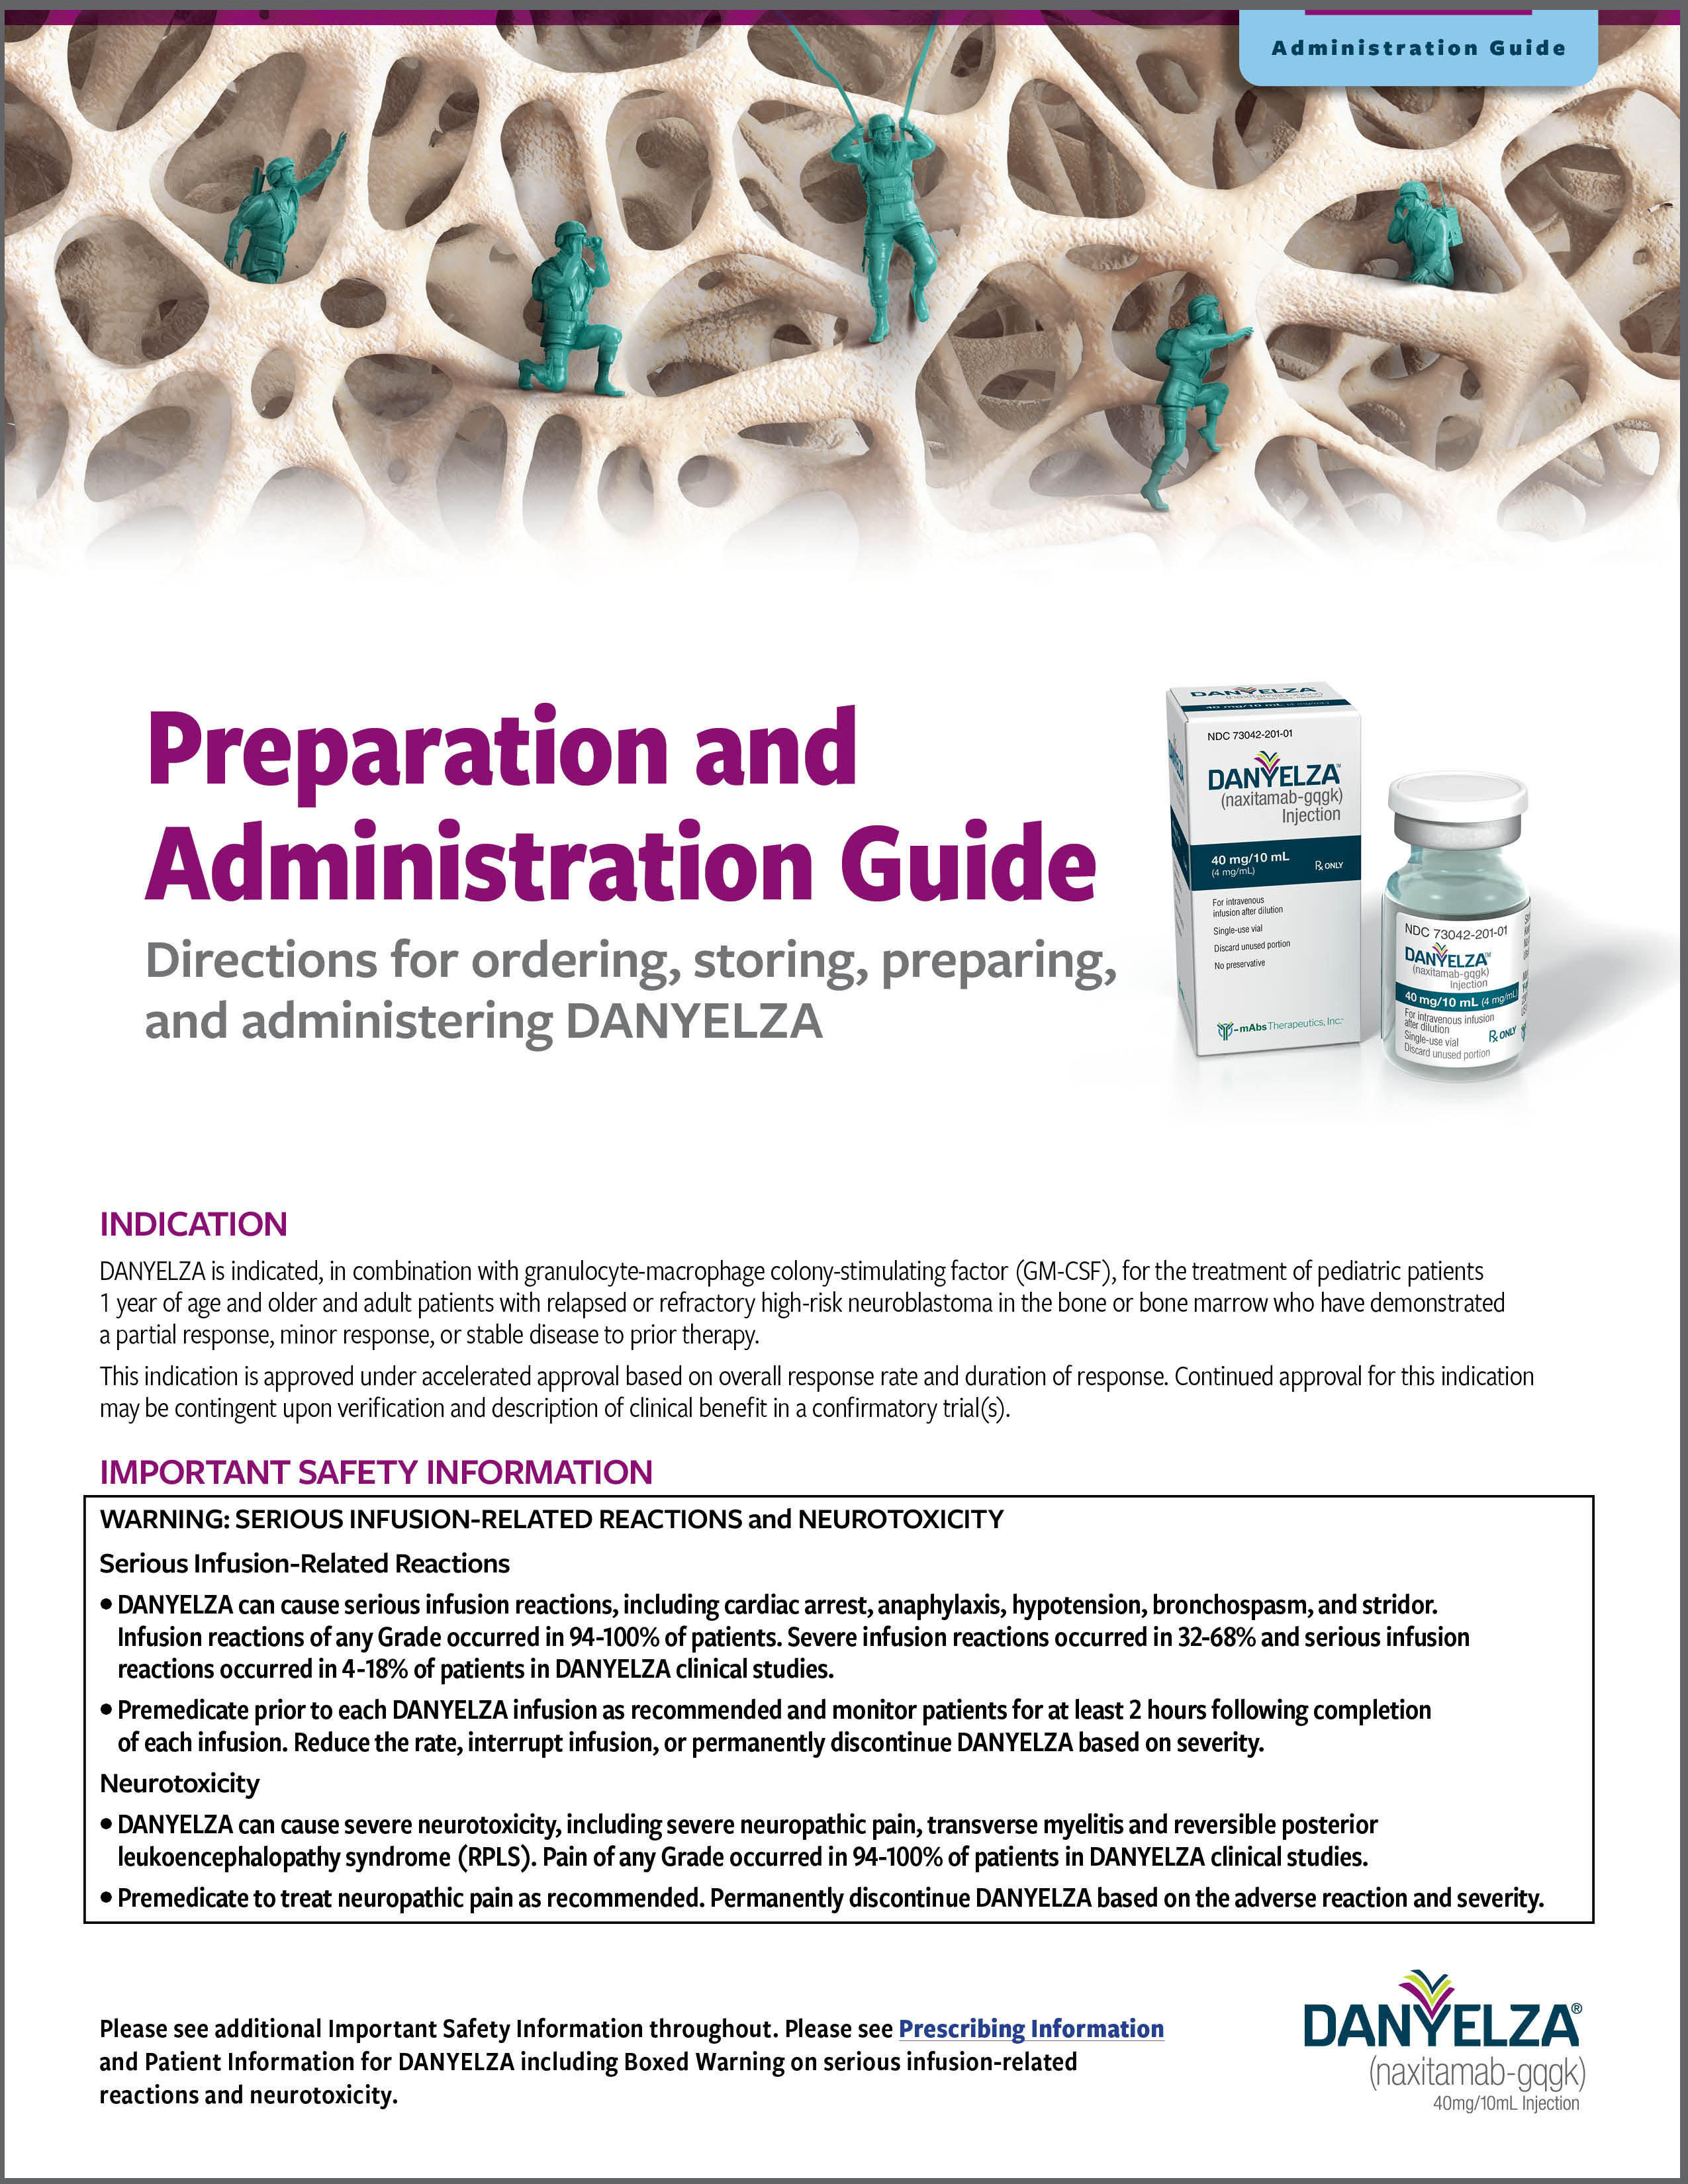 Download the DANYELZA PreparaNon and AdministraNon Guide.